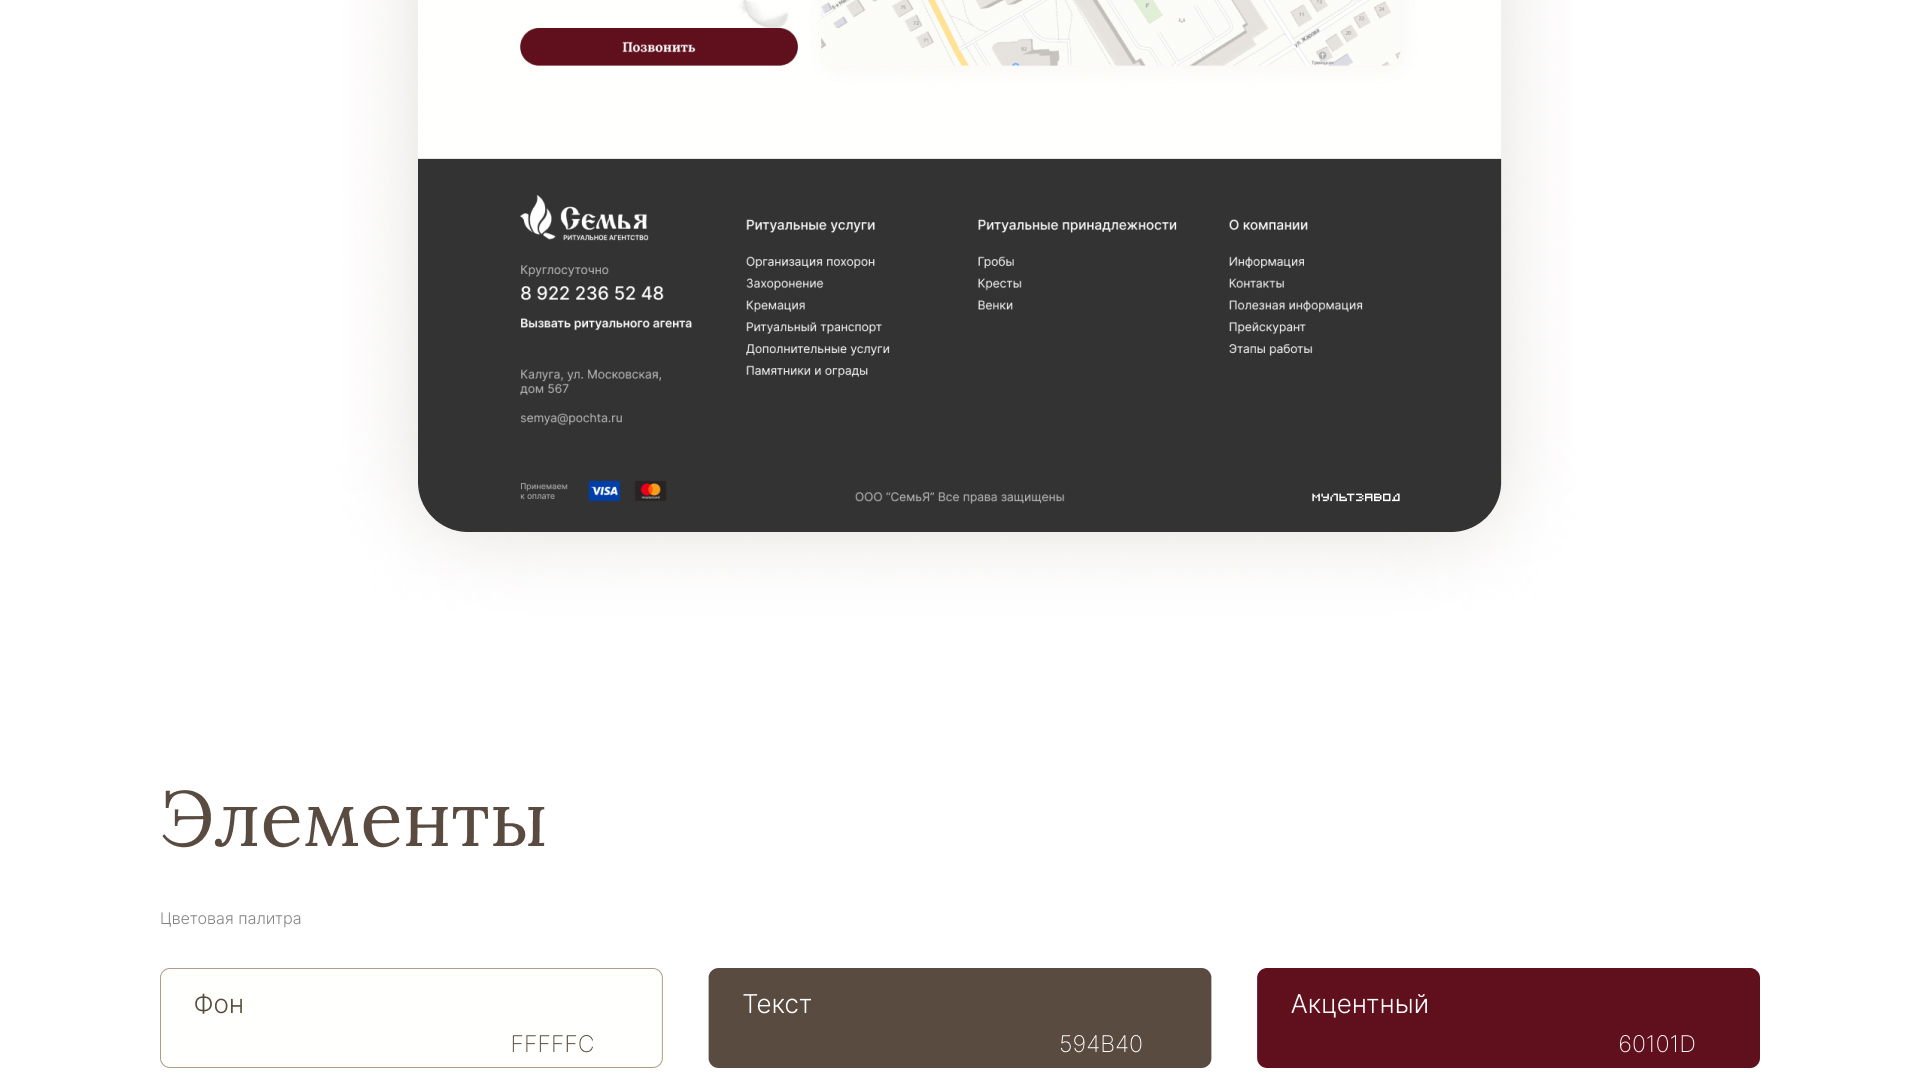 Разработка логотипа и сайта в  ритуальных услуг «Семья»